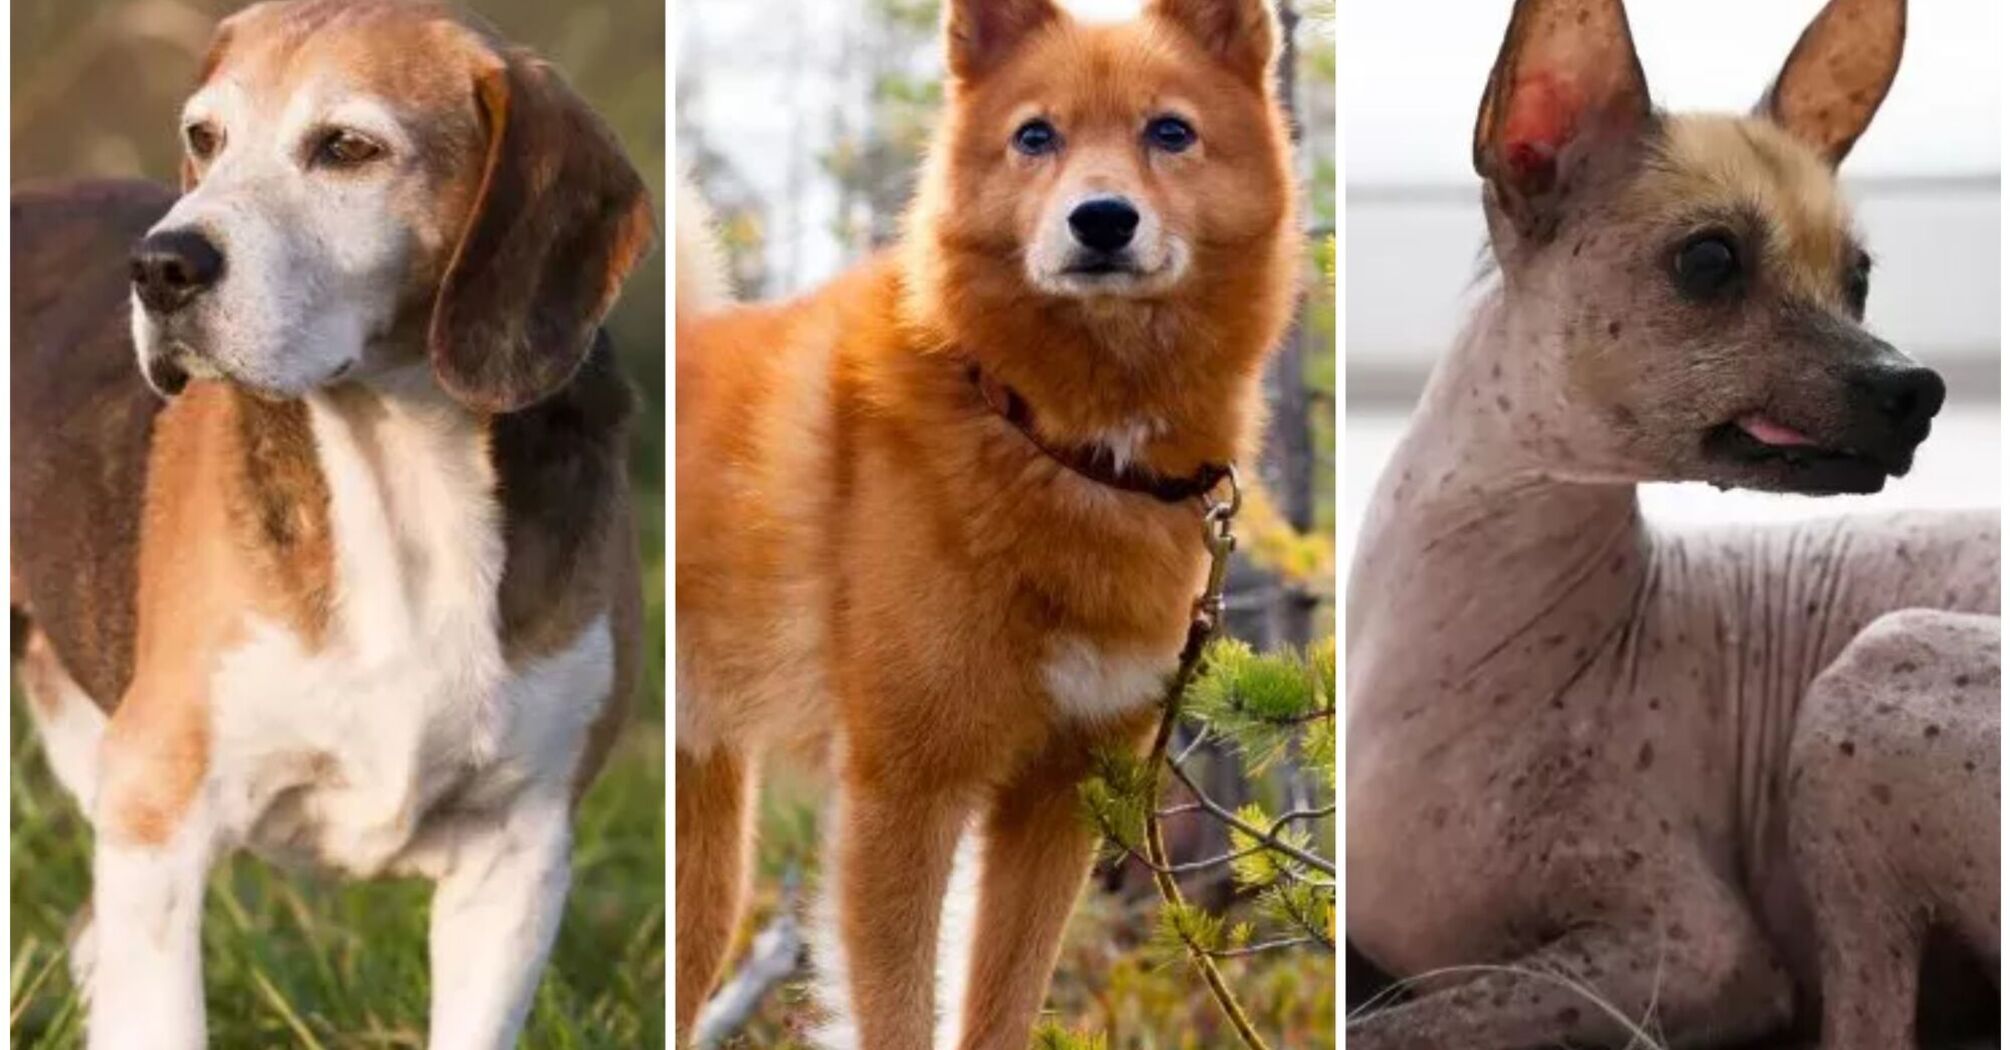 Top 5 endangered dog breeds